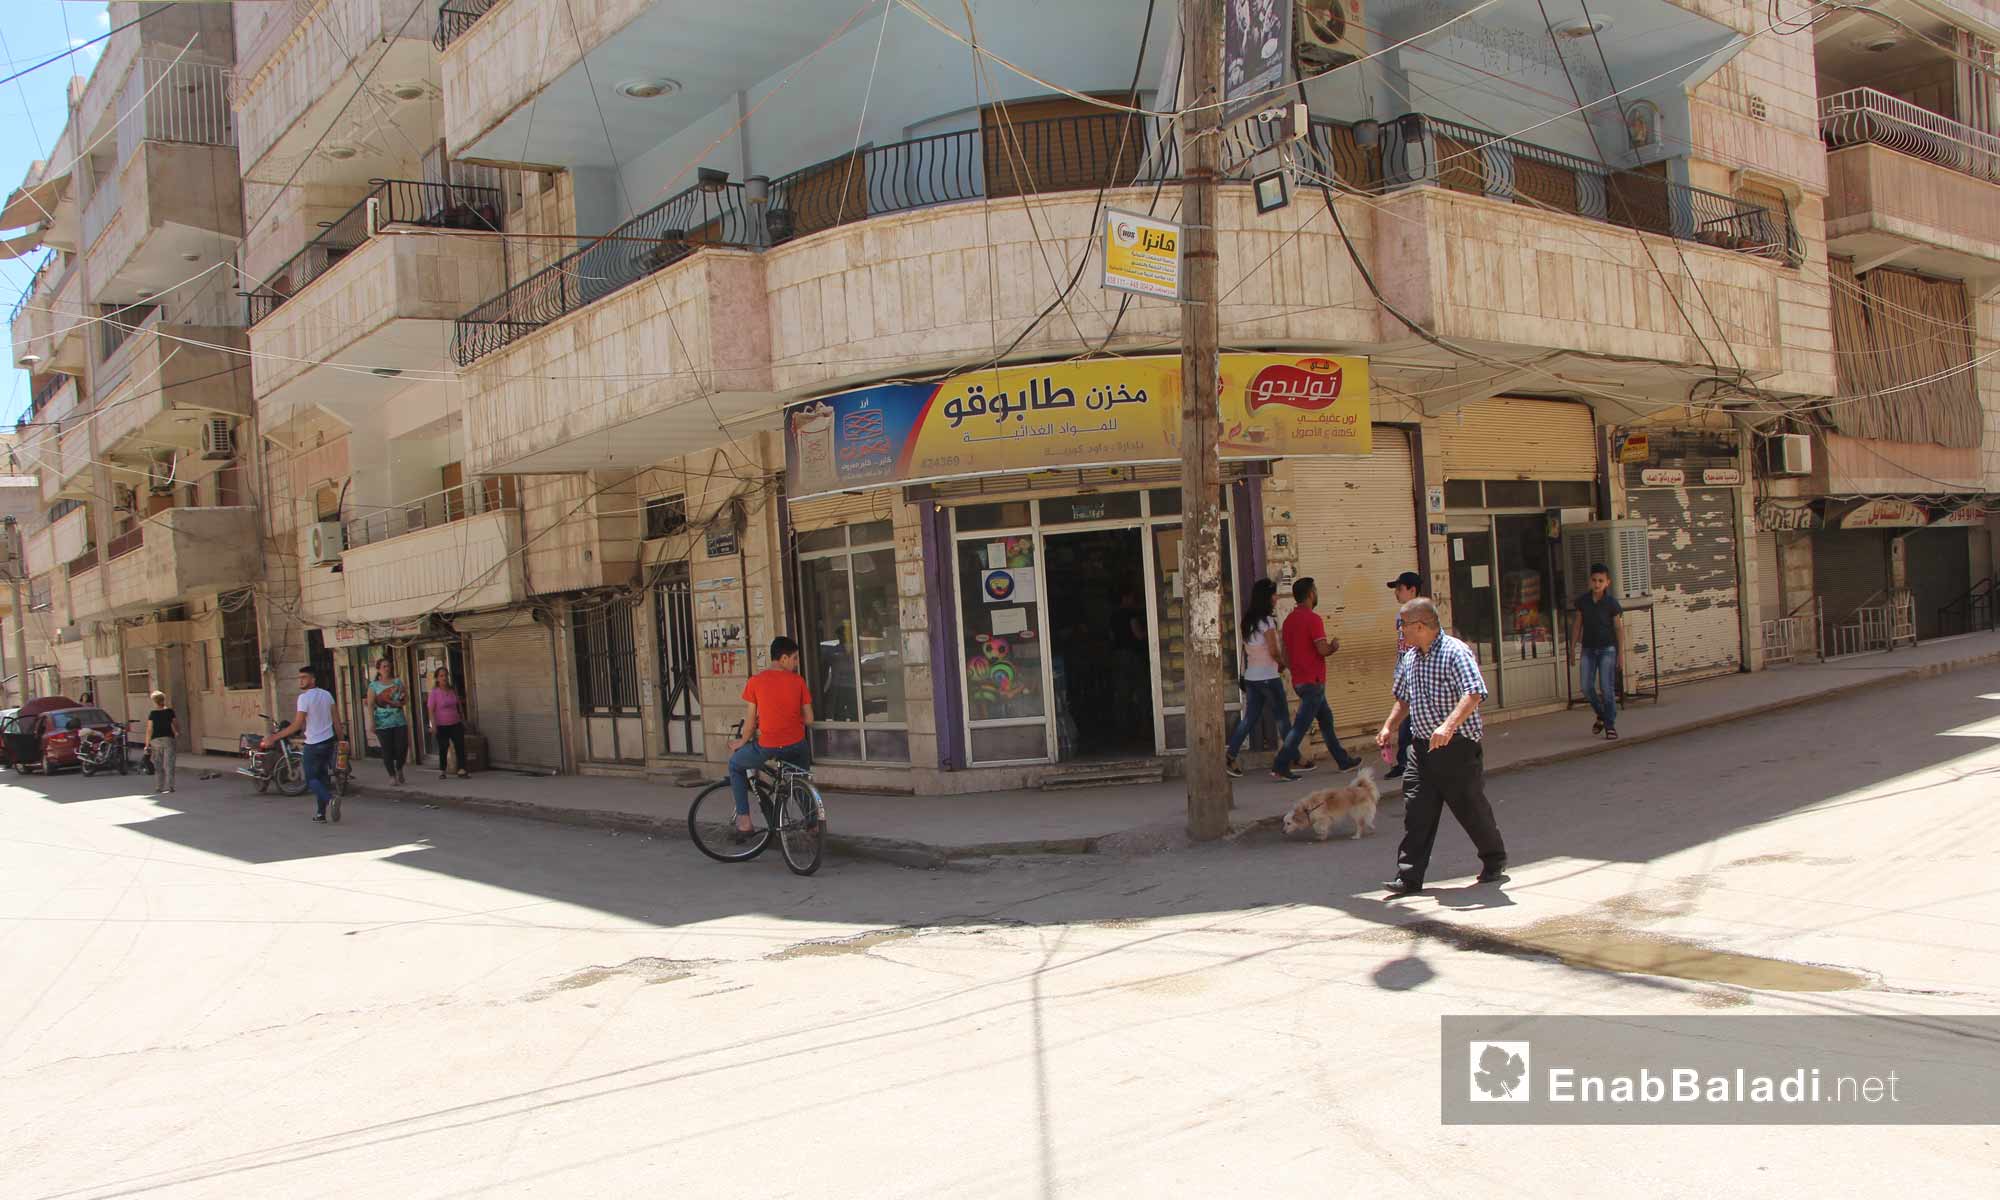 تجولت كاميرا عنب بلدي في حي الوسطى في مدينة القامشلي، الأربعاء 24 أيار 